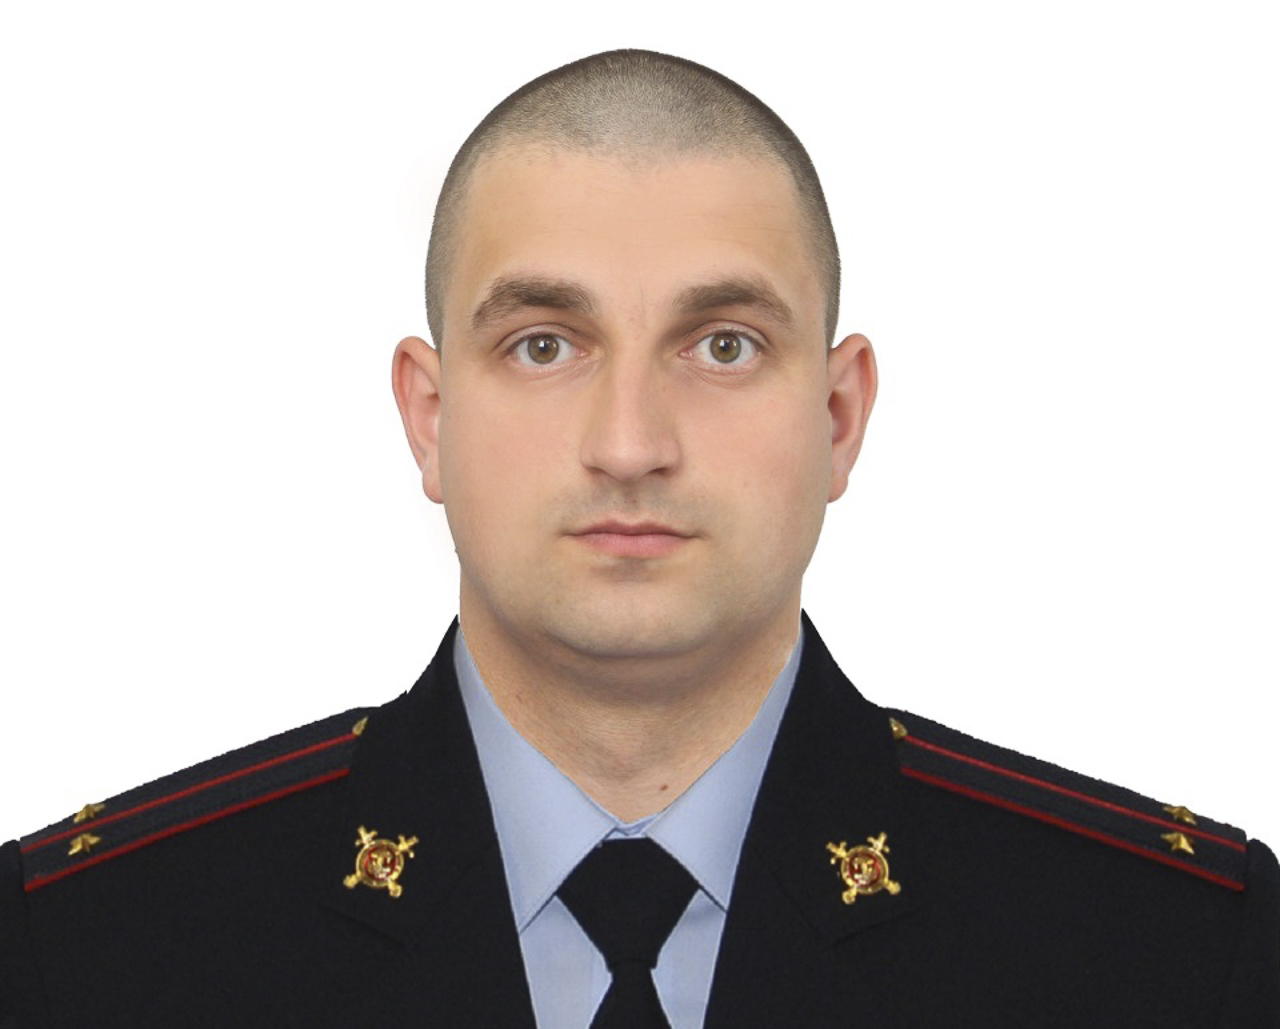 Младший лейтенант полиции Первоуральска получил медаль «За смелость во имя спасения»